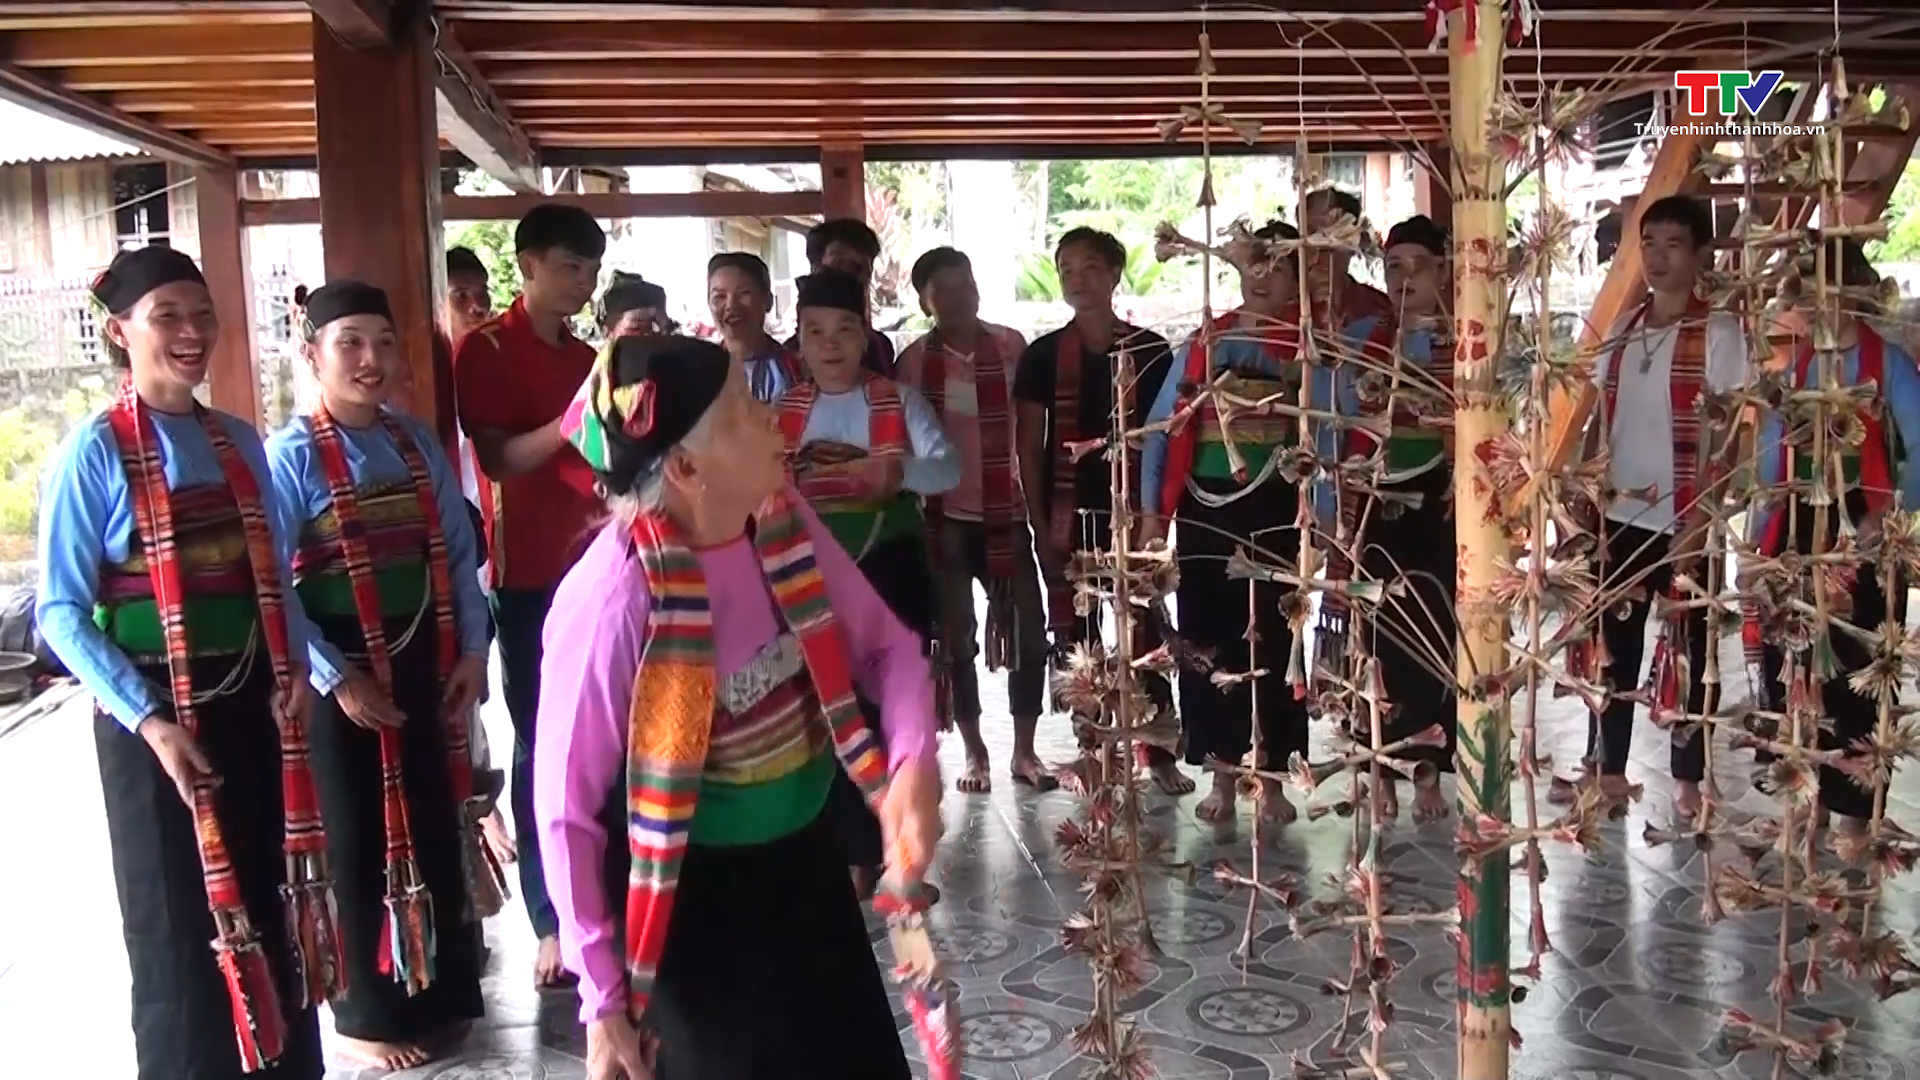 Lớp truyền dạy dân ca, dân vũ, dân nhạc truyền thống dân tộc Mường tại huyện Ngọc Lặc năm 2023 - Ảnh 2.